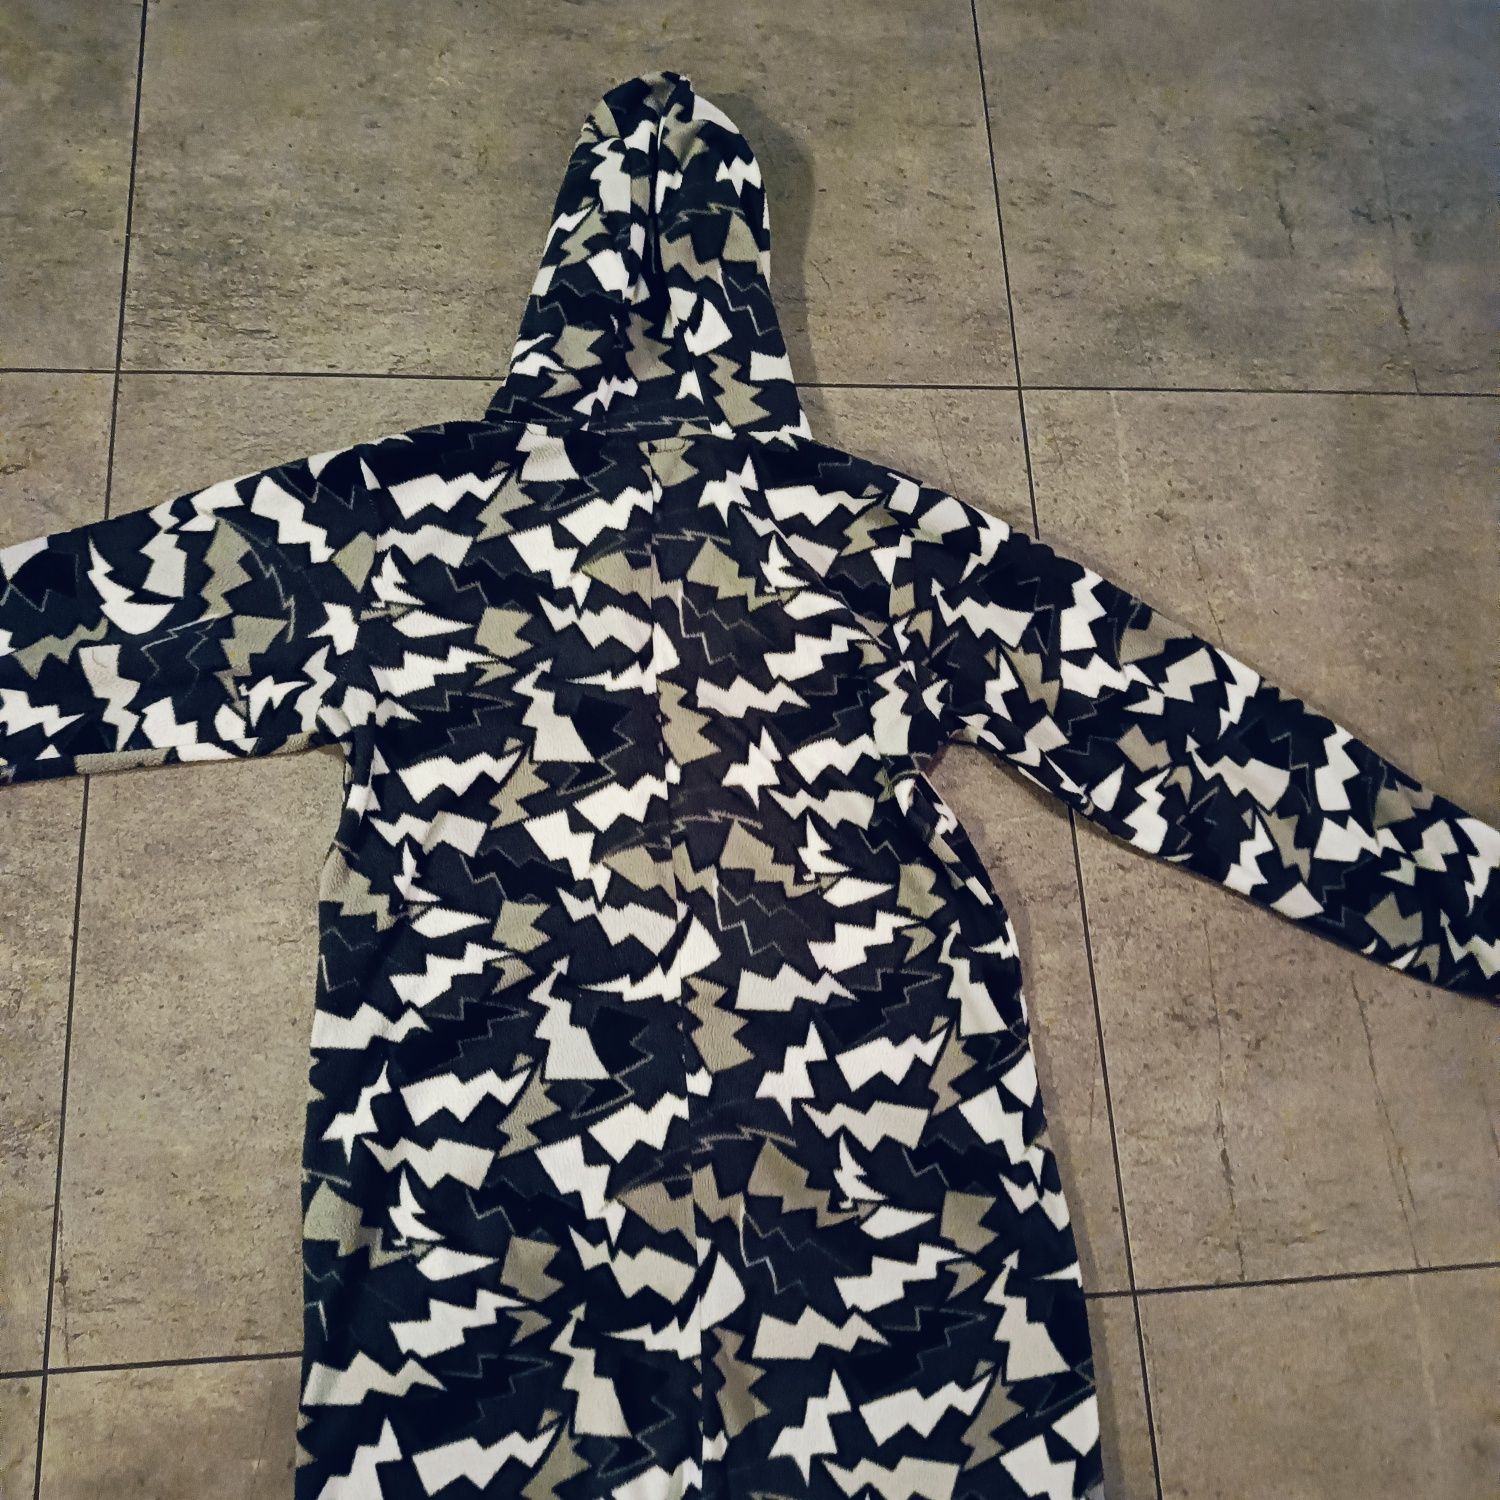 Kombinezon, onesie, piżama jednoczęściowa, pajac, rozmiar 146/152 cm